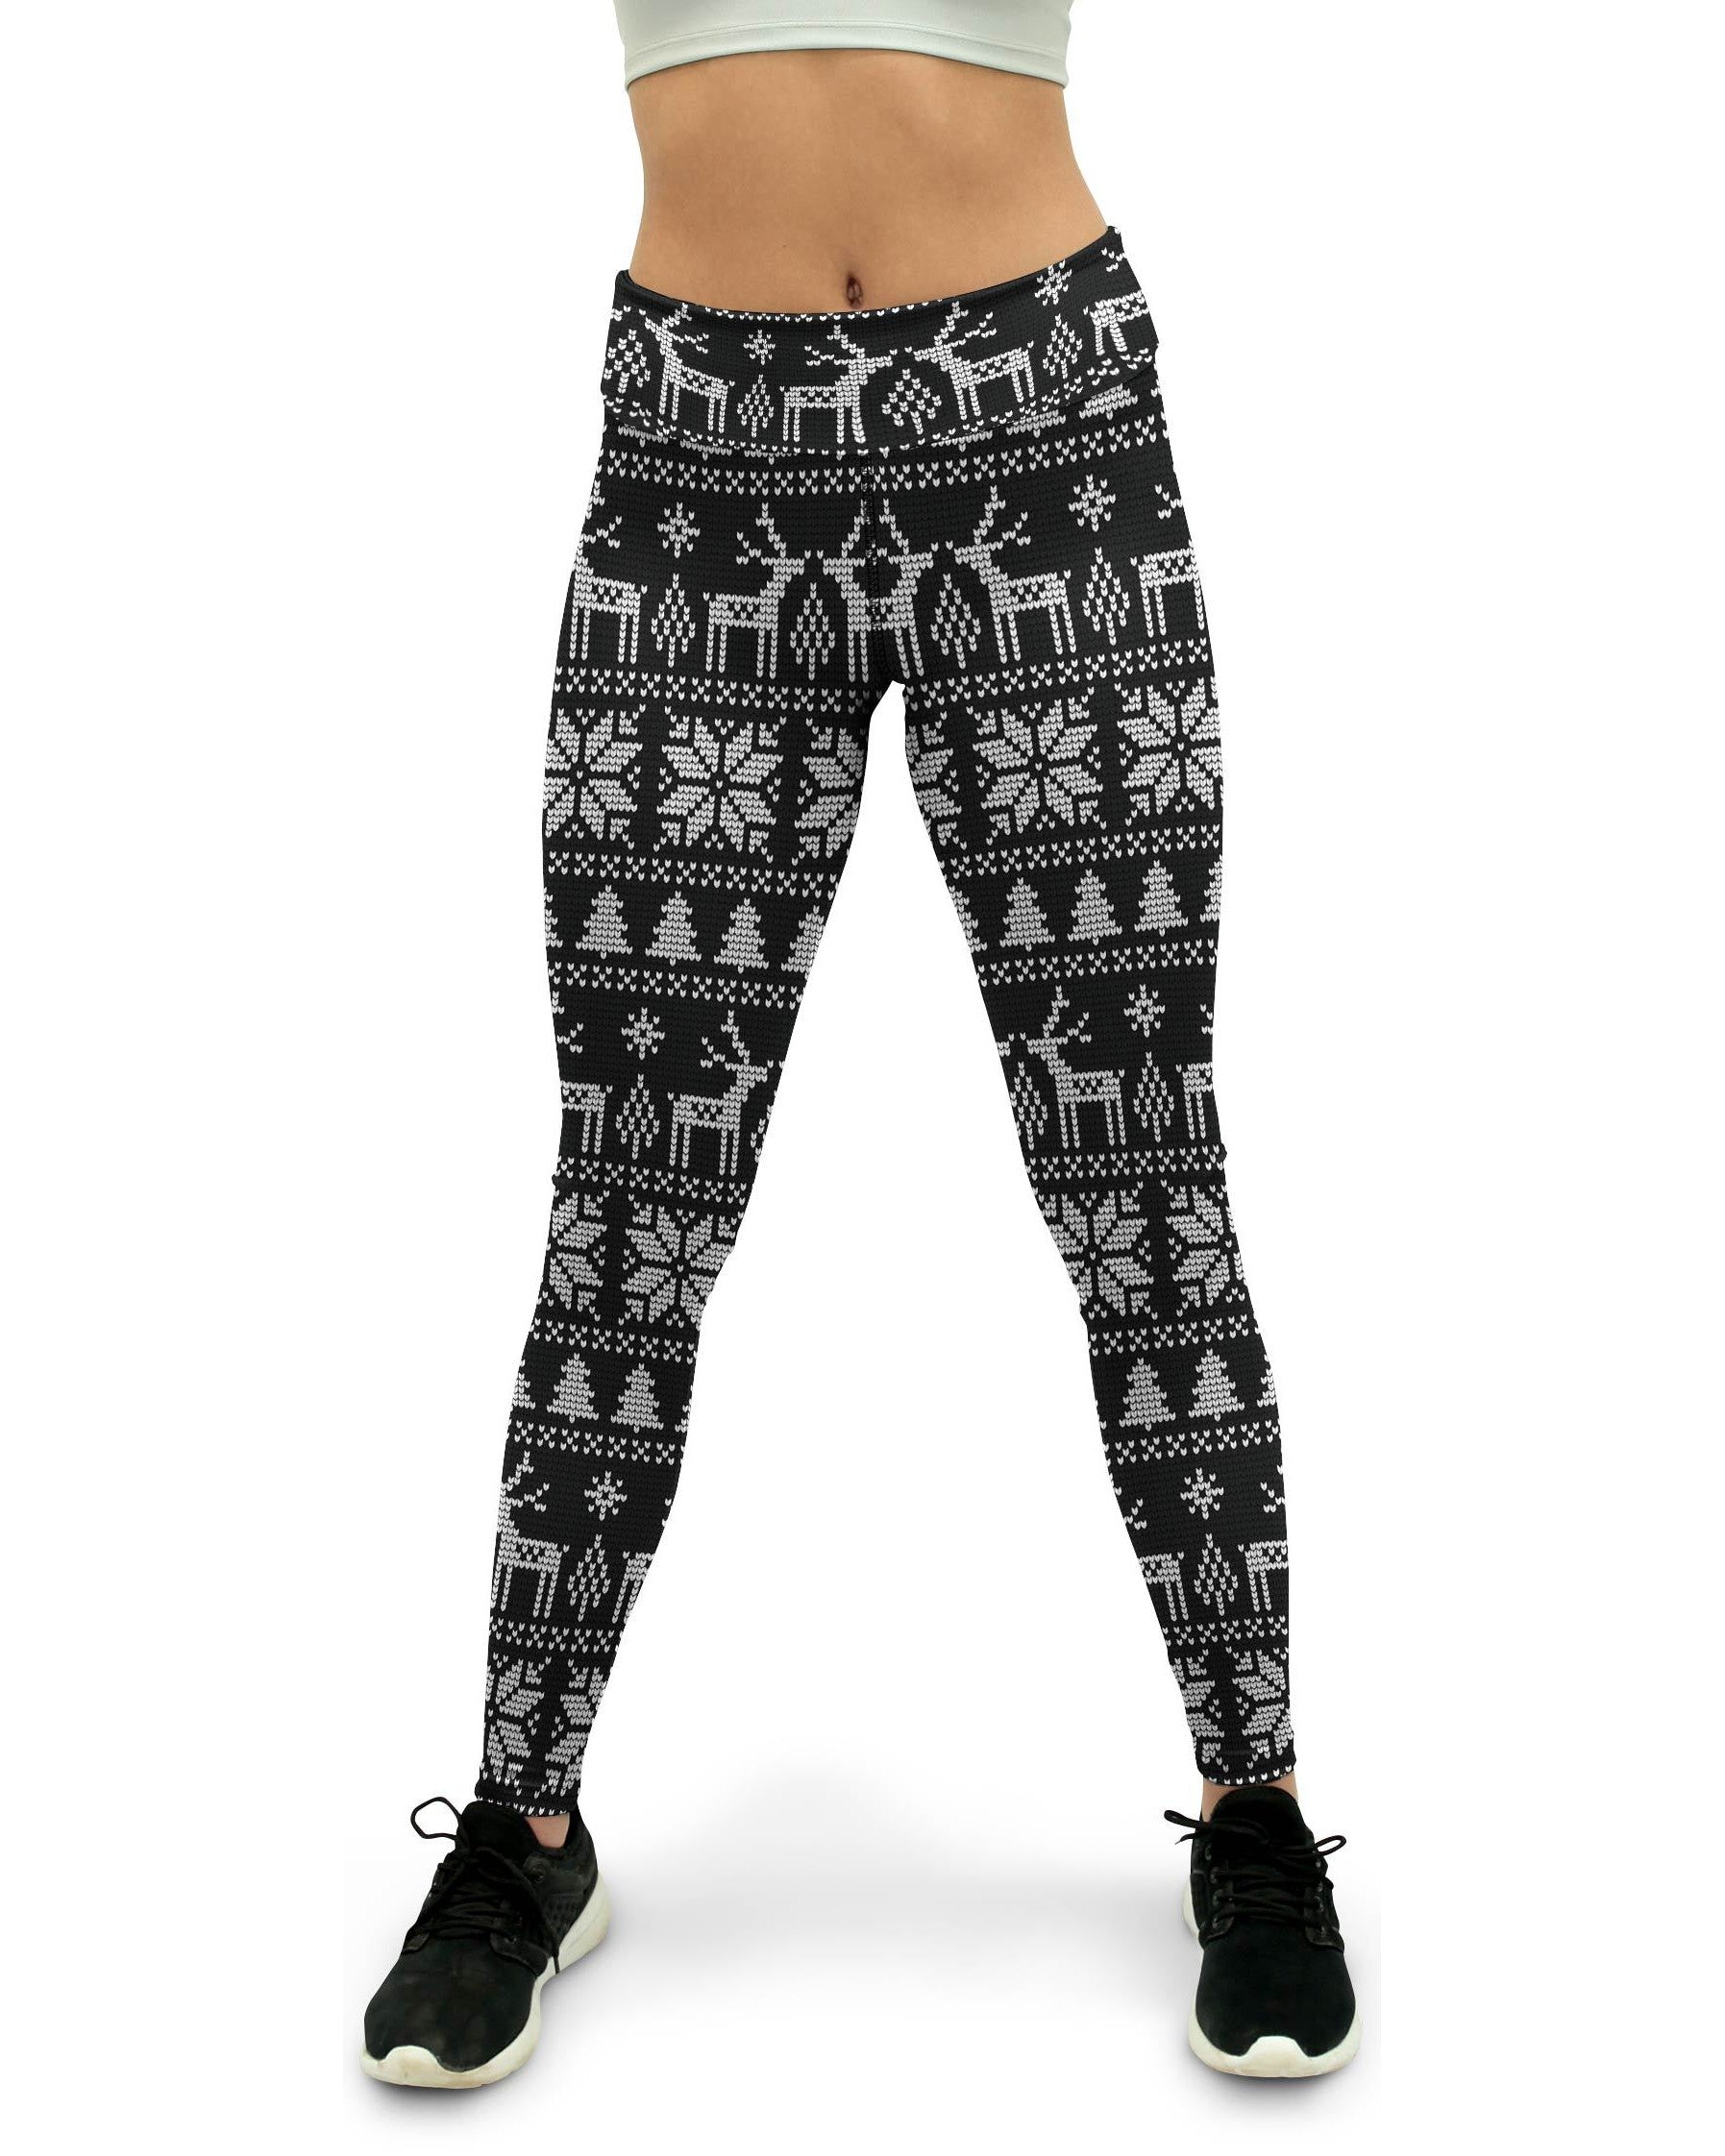 B&W Ugly Christmas Yoga Pants